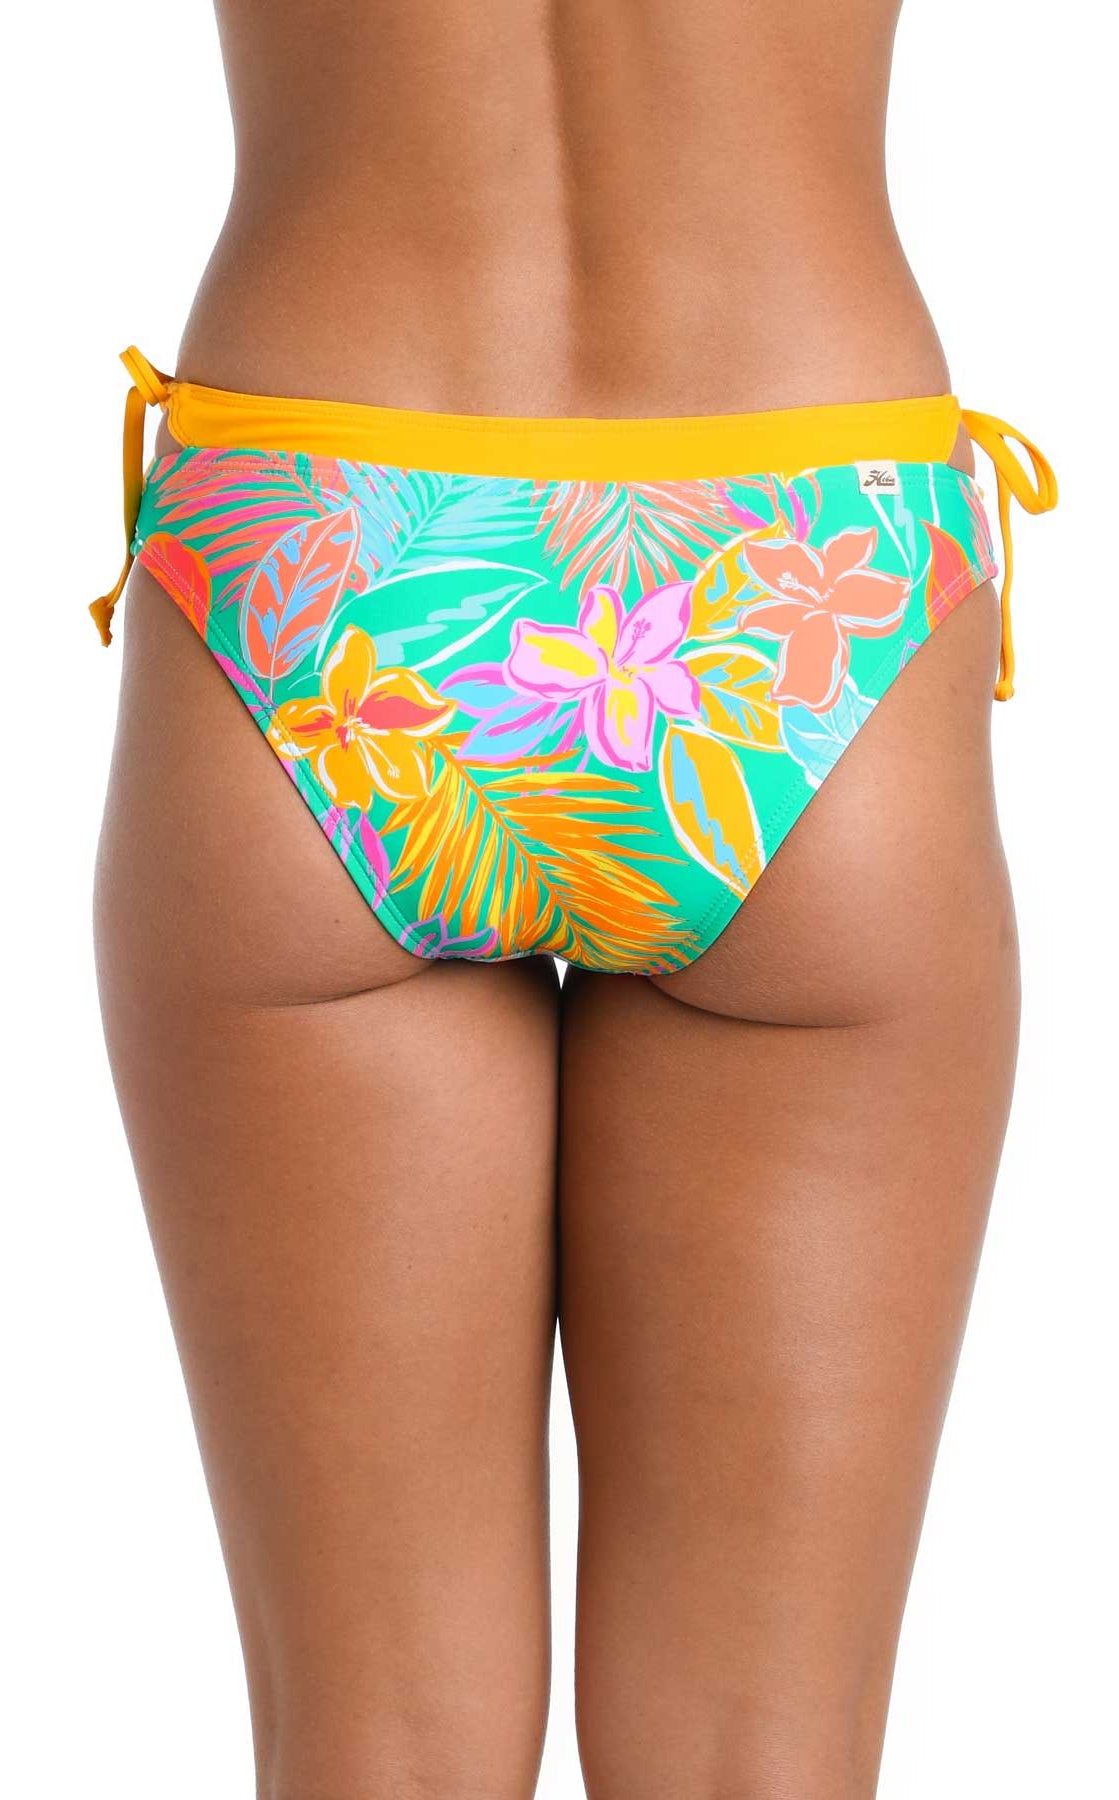 Hobie: Maui Pop Faux Layered Hipster Bikini Bottom